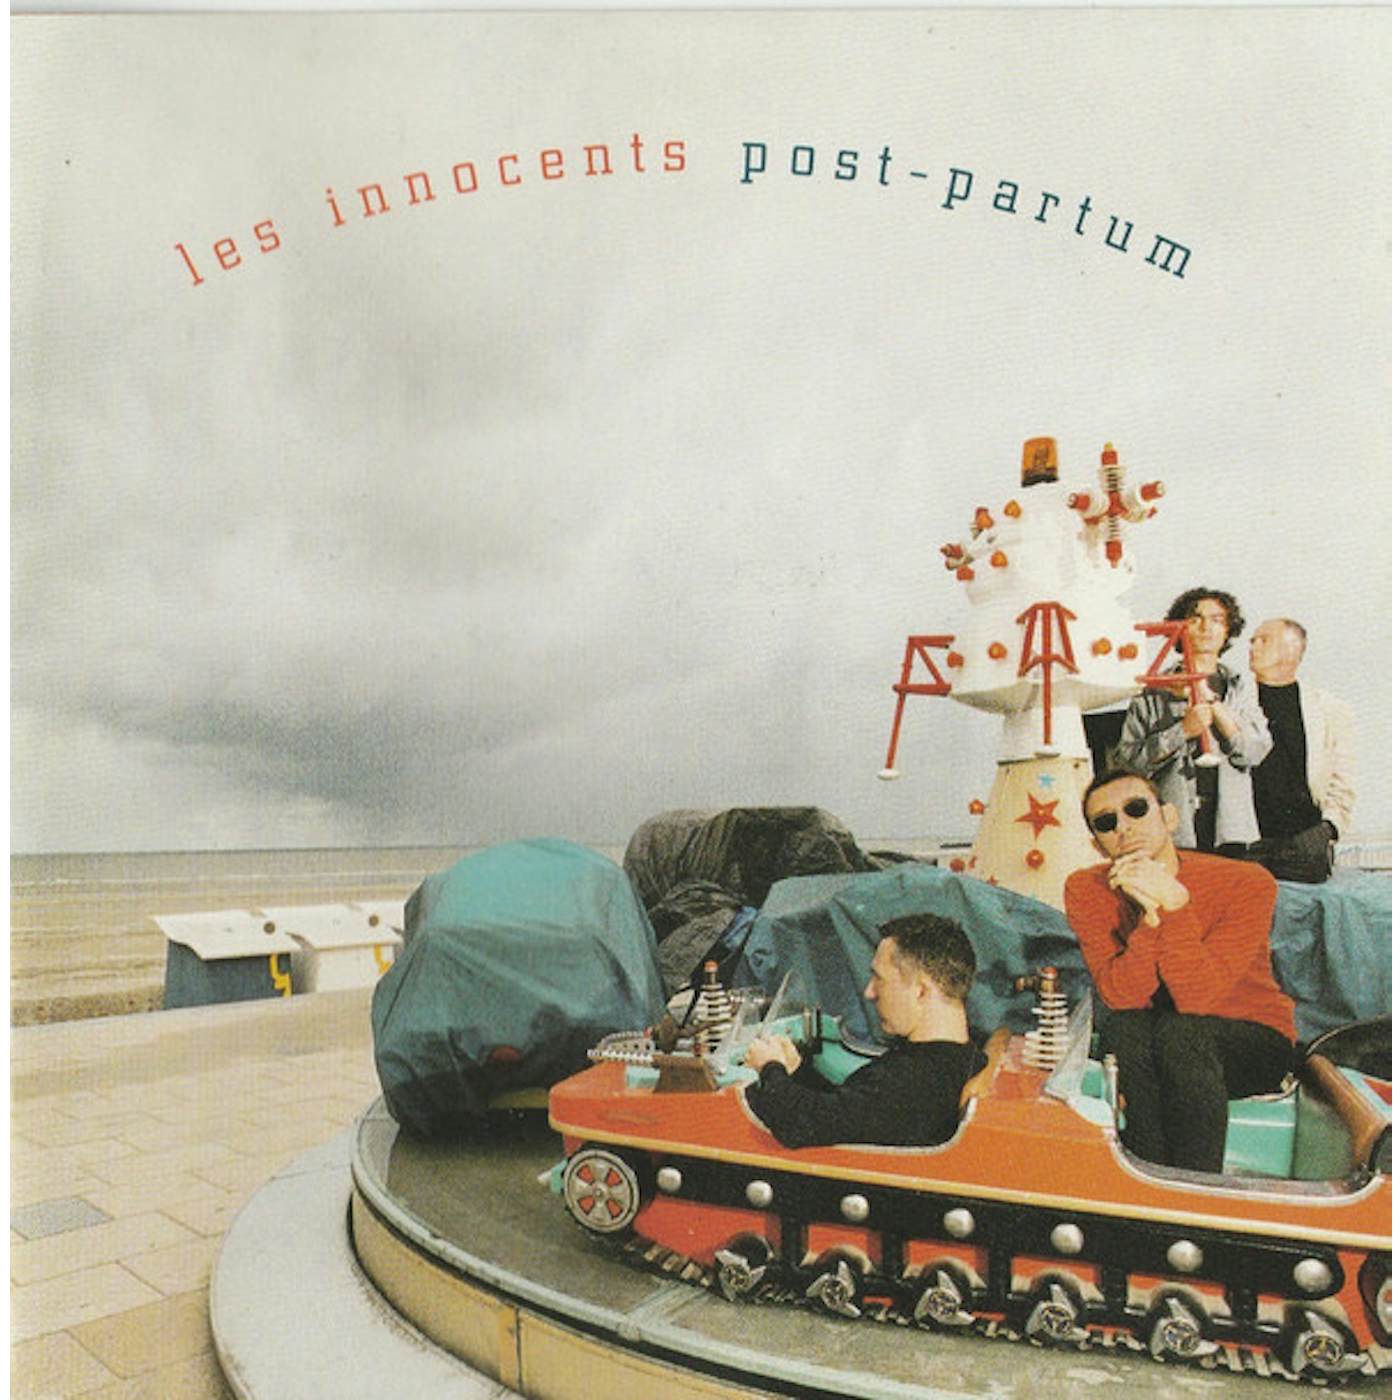 Les Innocents Post-partum lp Vinyl Record